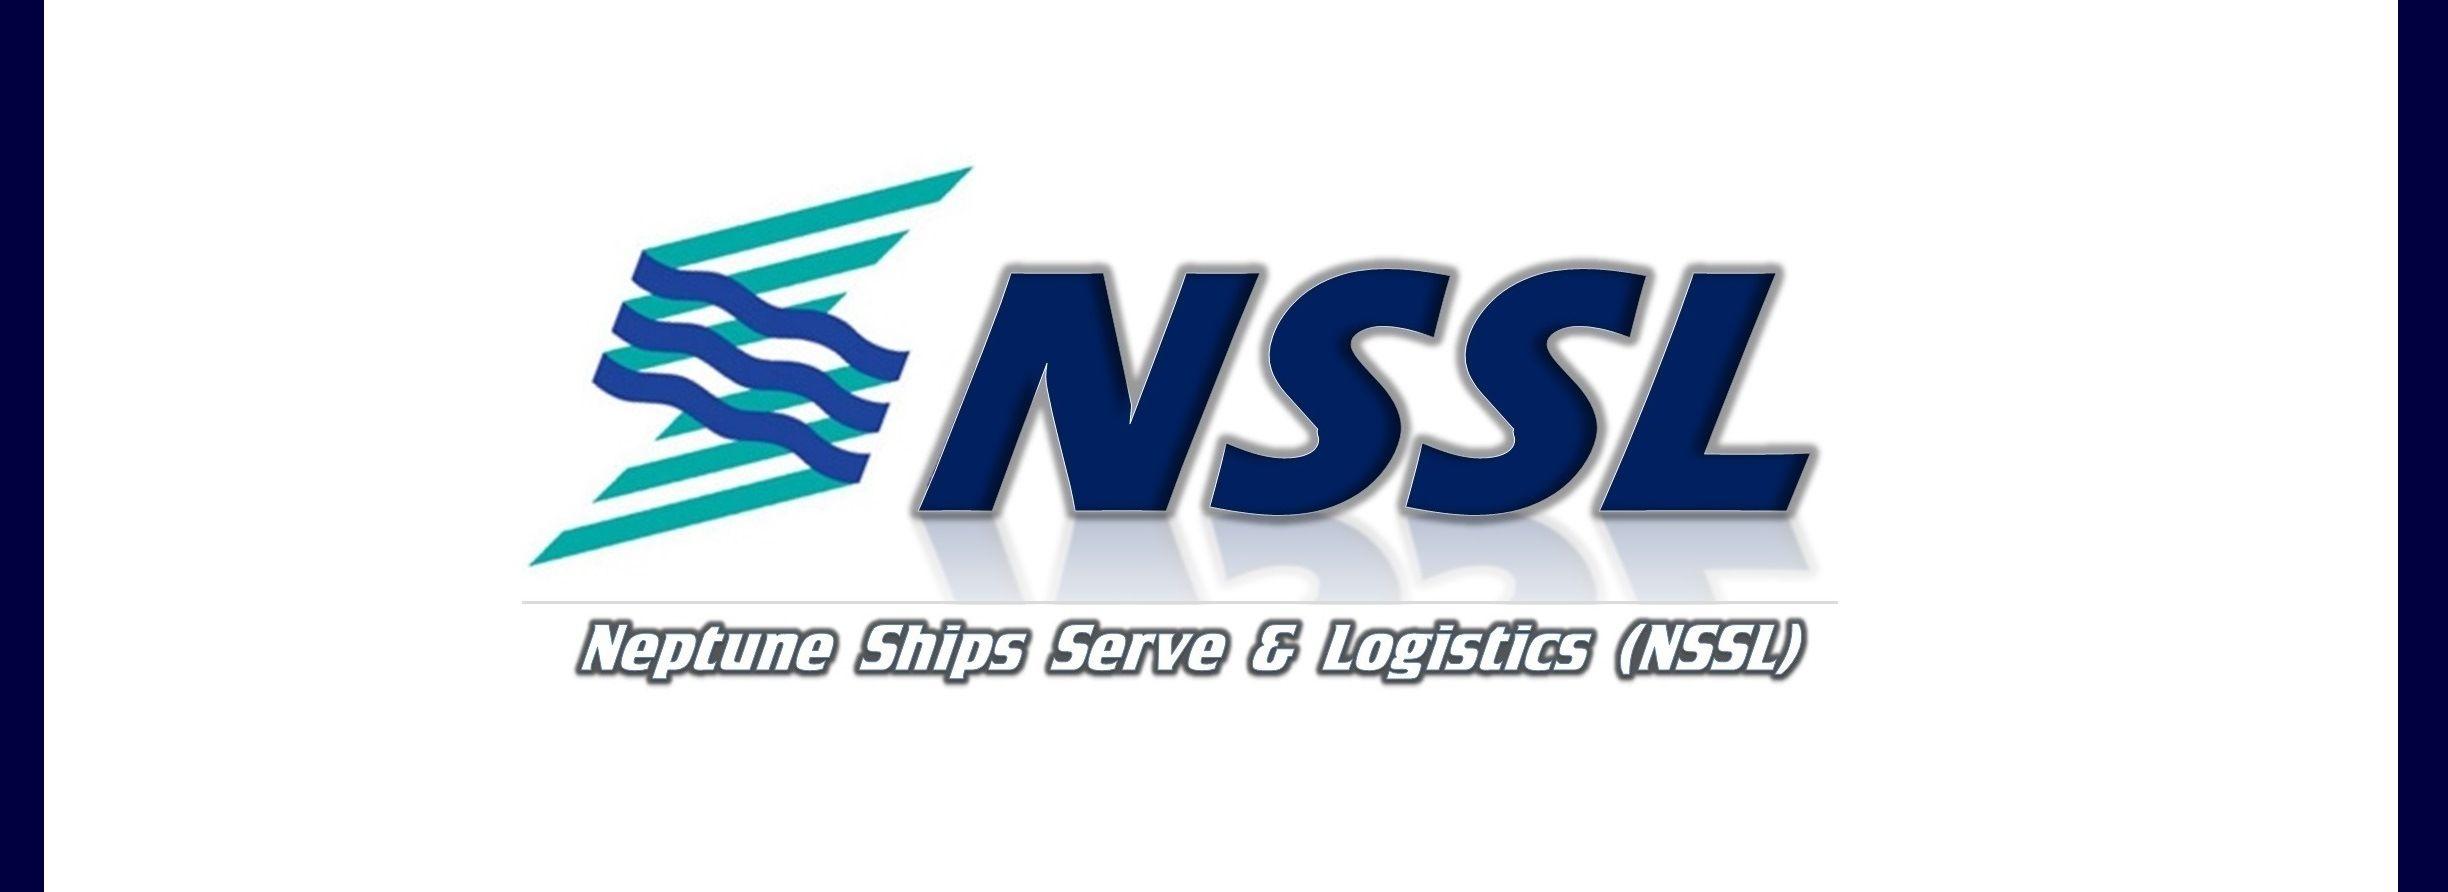 NSSL Logo - NSSL Ships Serve & Logistics